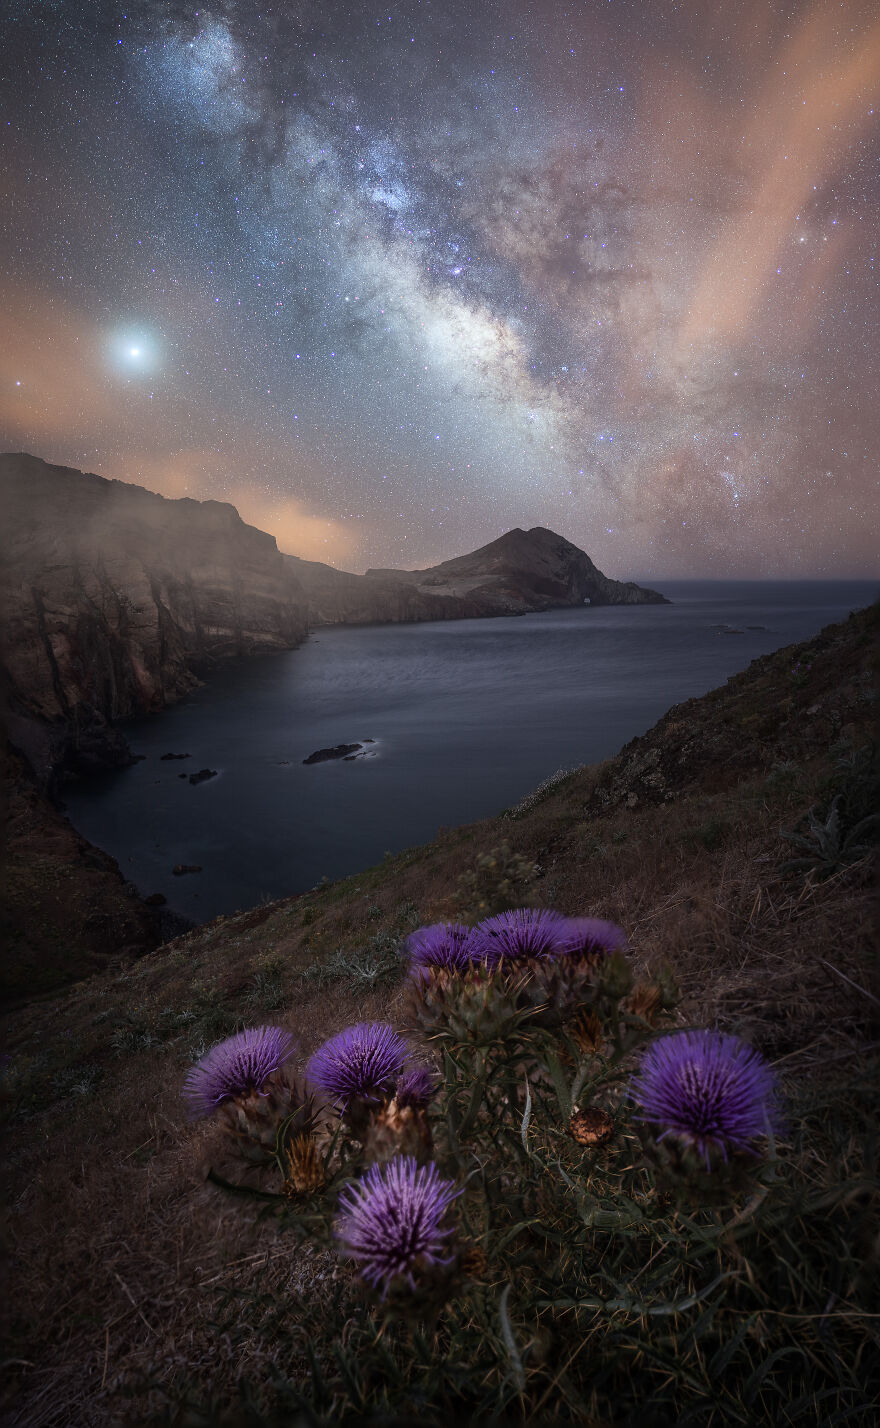 Milky Way/Night Sky/Alex Forrest